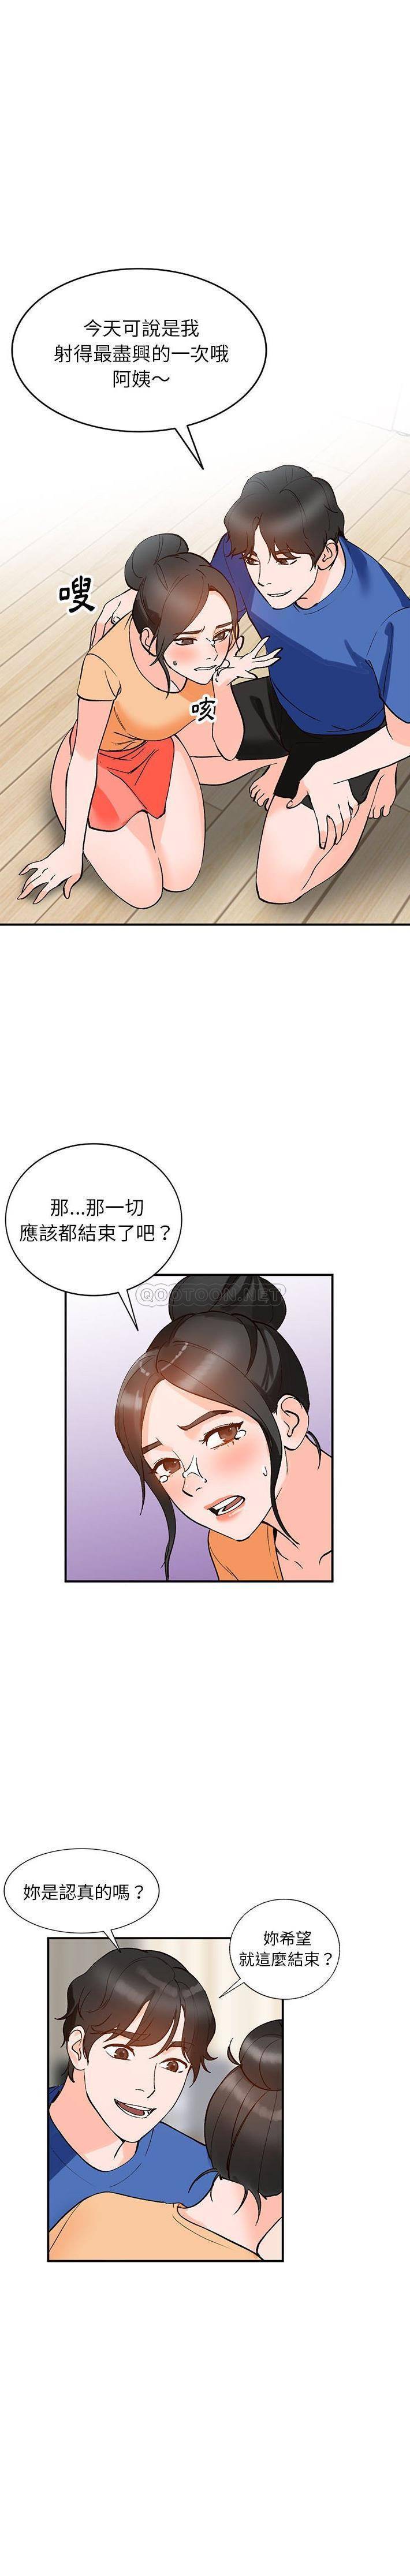 韩国污漫画 她們的小秘密(小鎮上的女人們) 第11话 15